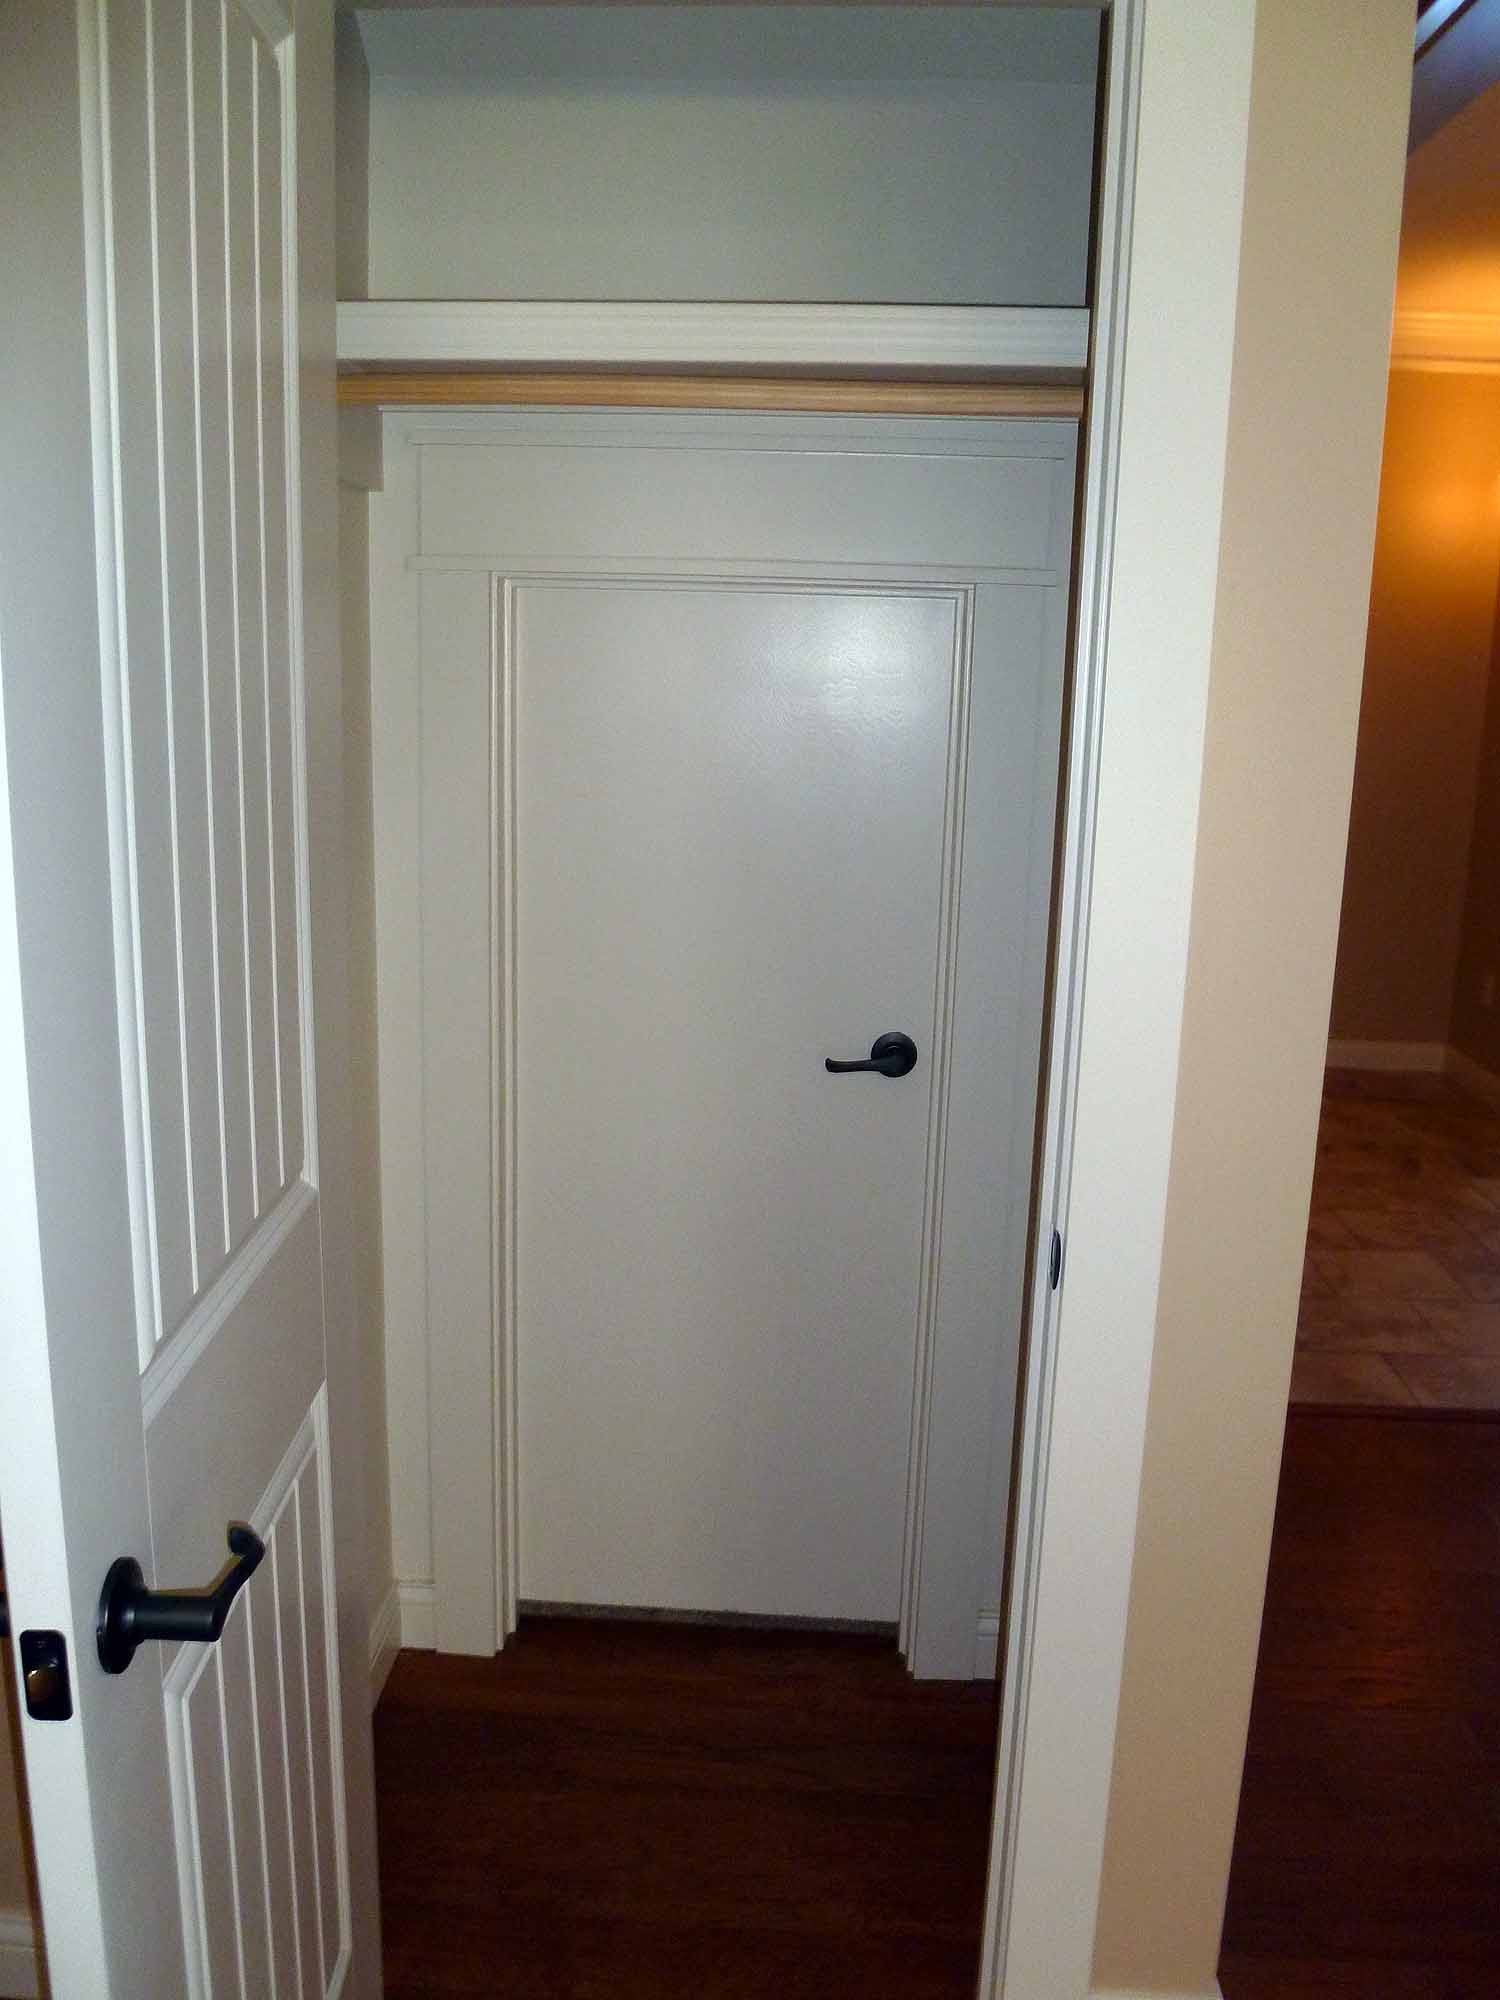 Hidden door in rear of closet